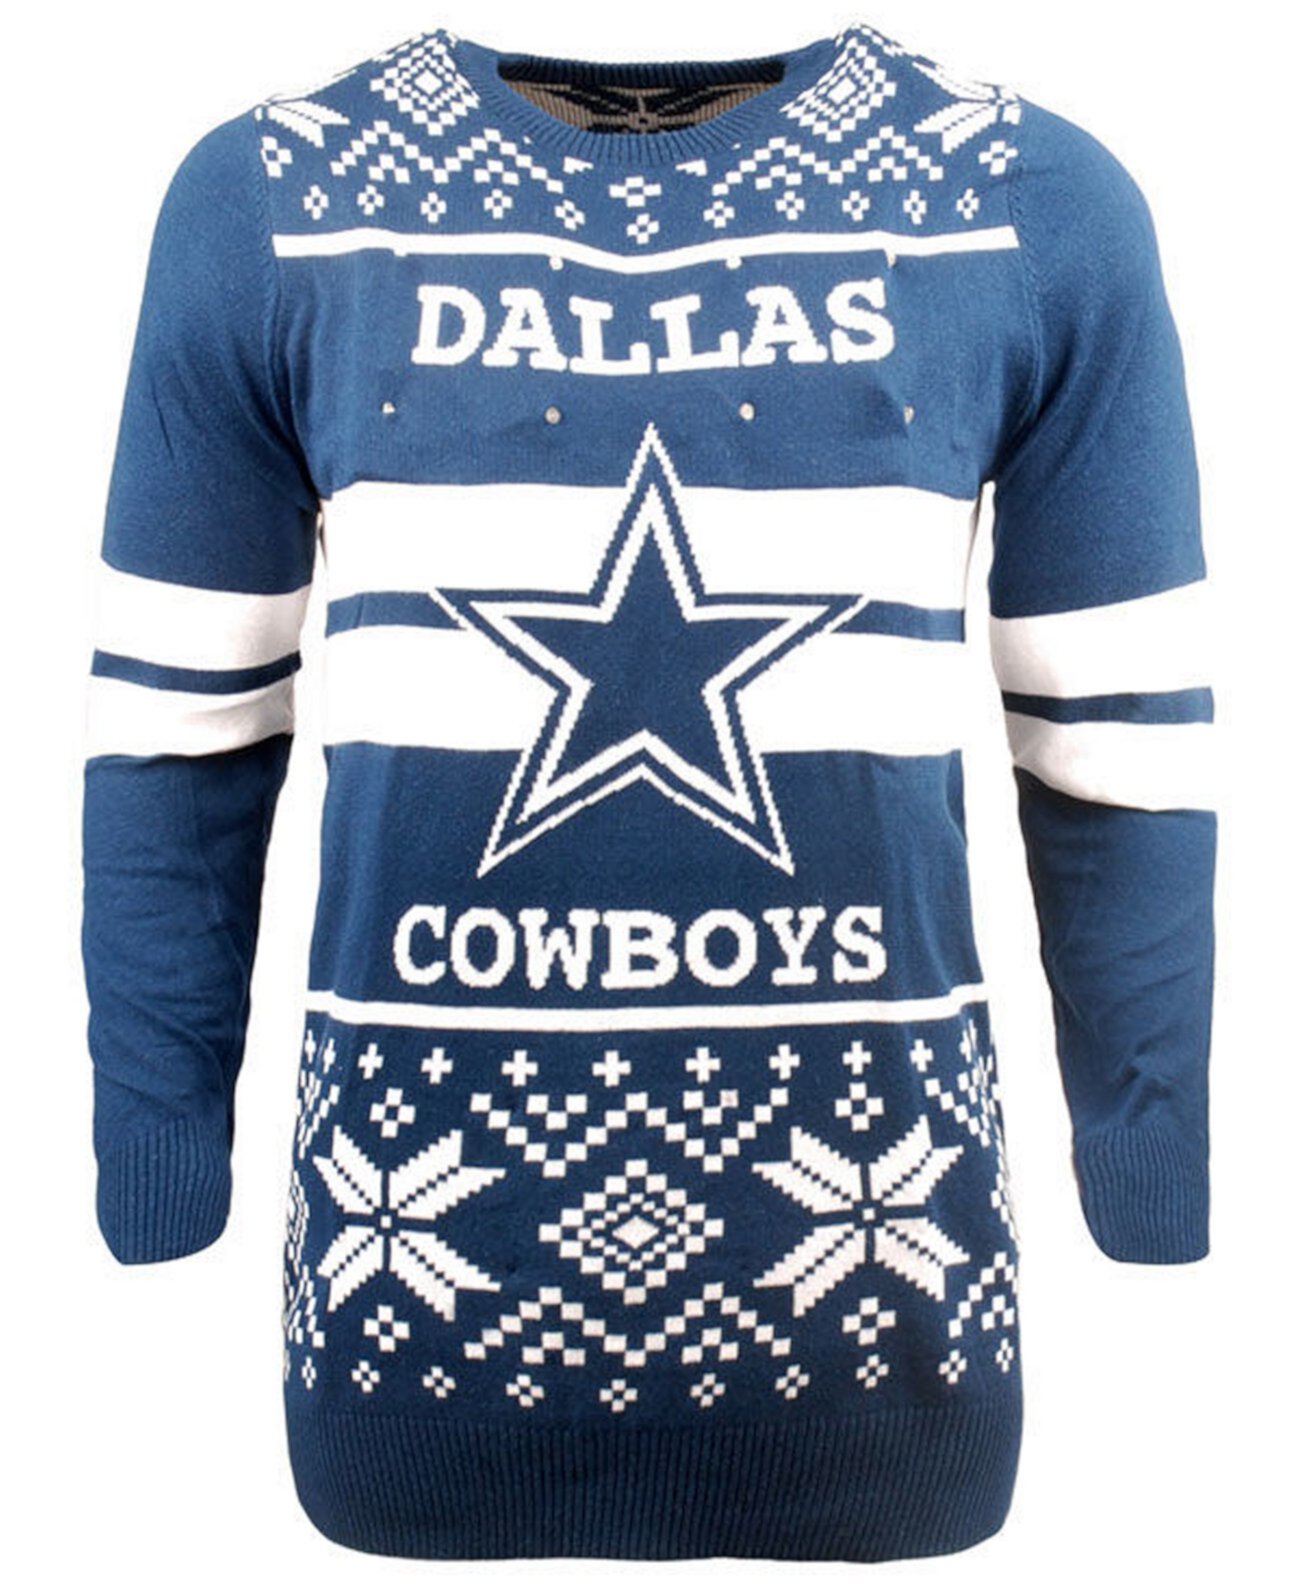 Мужская Dallas Cowboys свитер с двумя полосками и большим логотипом Lightup Forever Collectibles